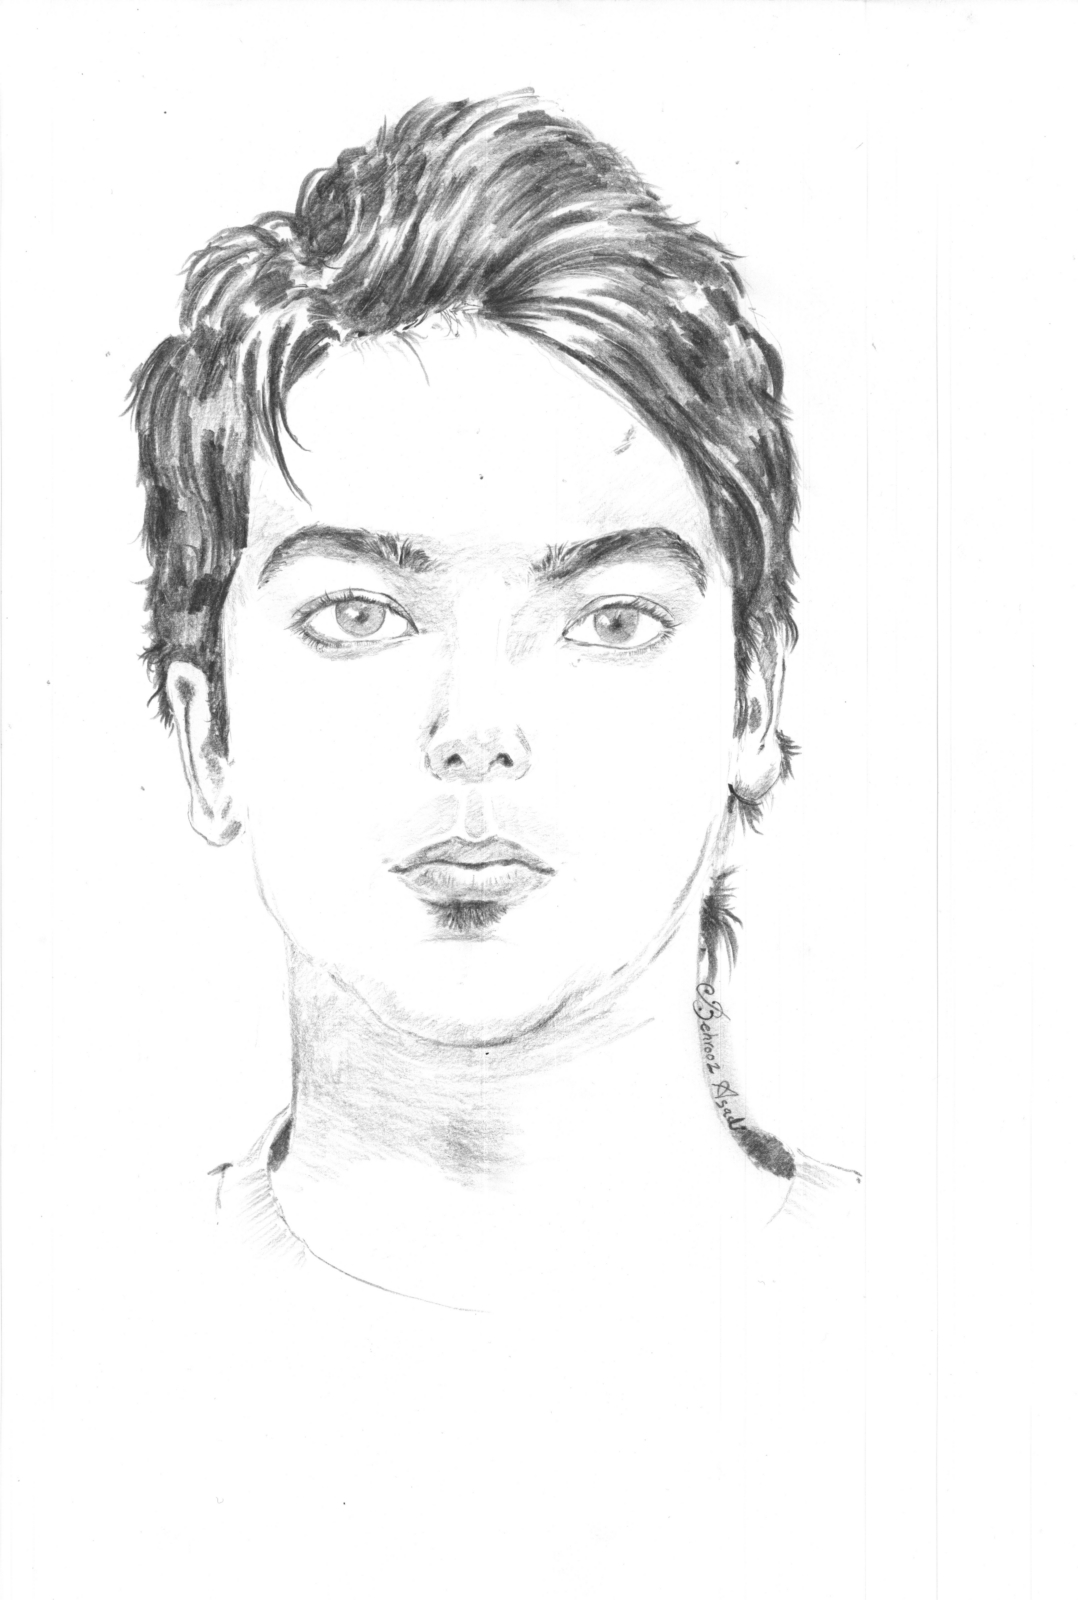 طراحی چهره پسر جوان با مداد سیاه